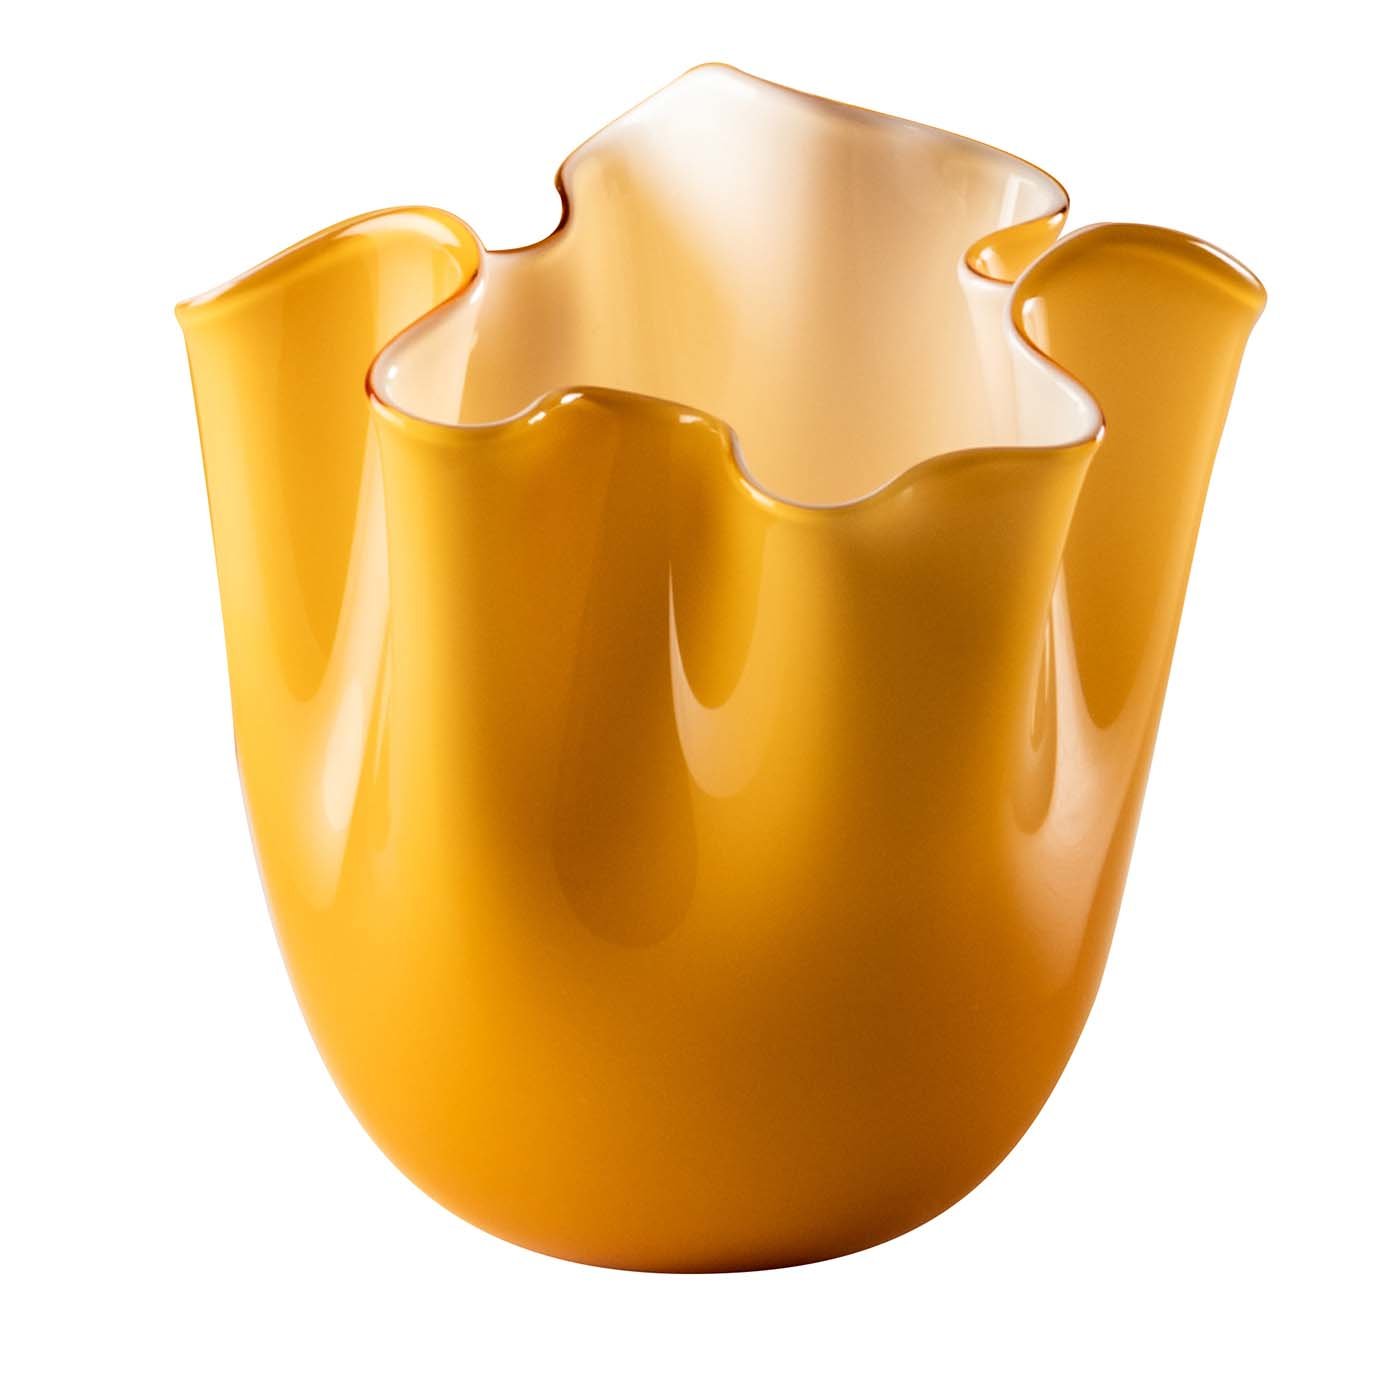 Fazzoletti Opaline Small Amber Vase di Fulvio Bianconi e Paolo Venini - Vista principale